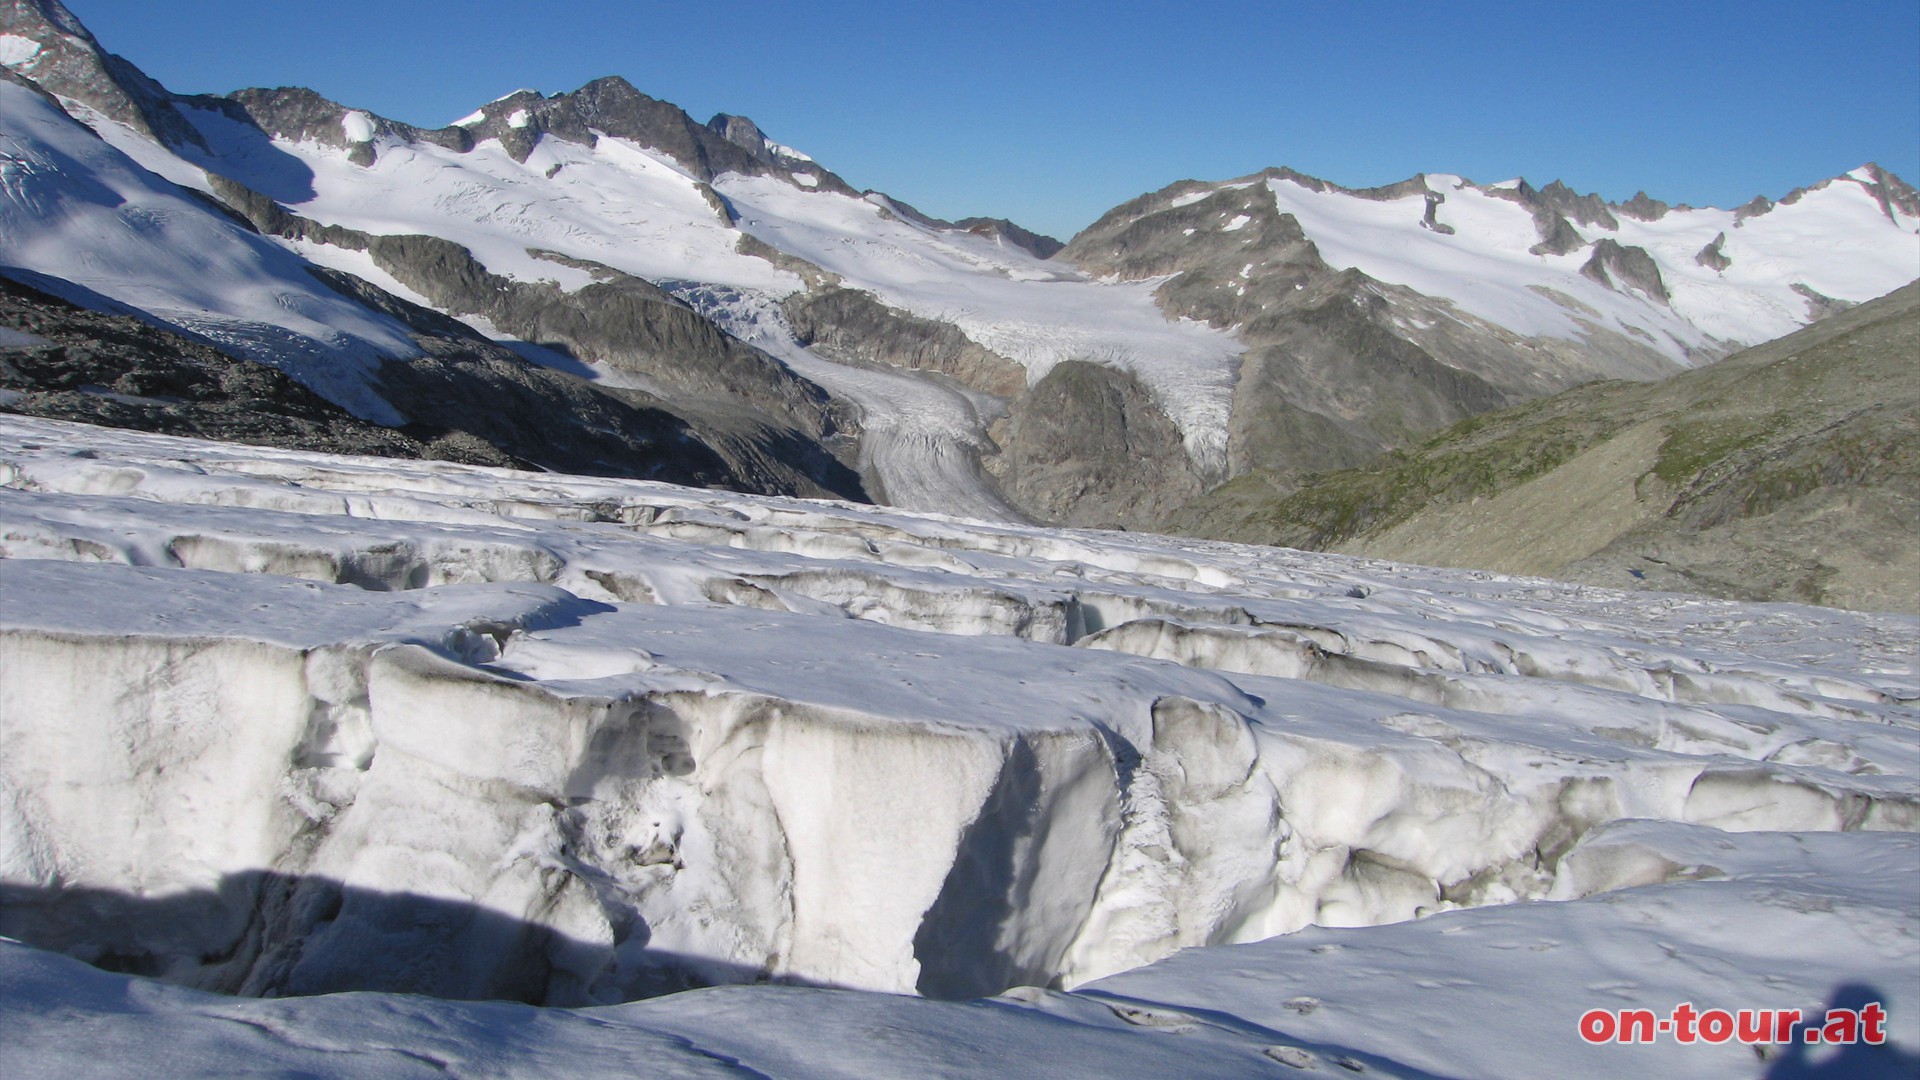 Langgezogene, breite und tiefe Gletscherspalten sind hier keine Seltenheit.